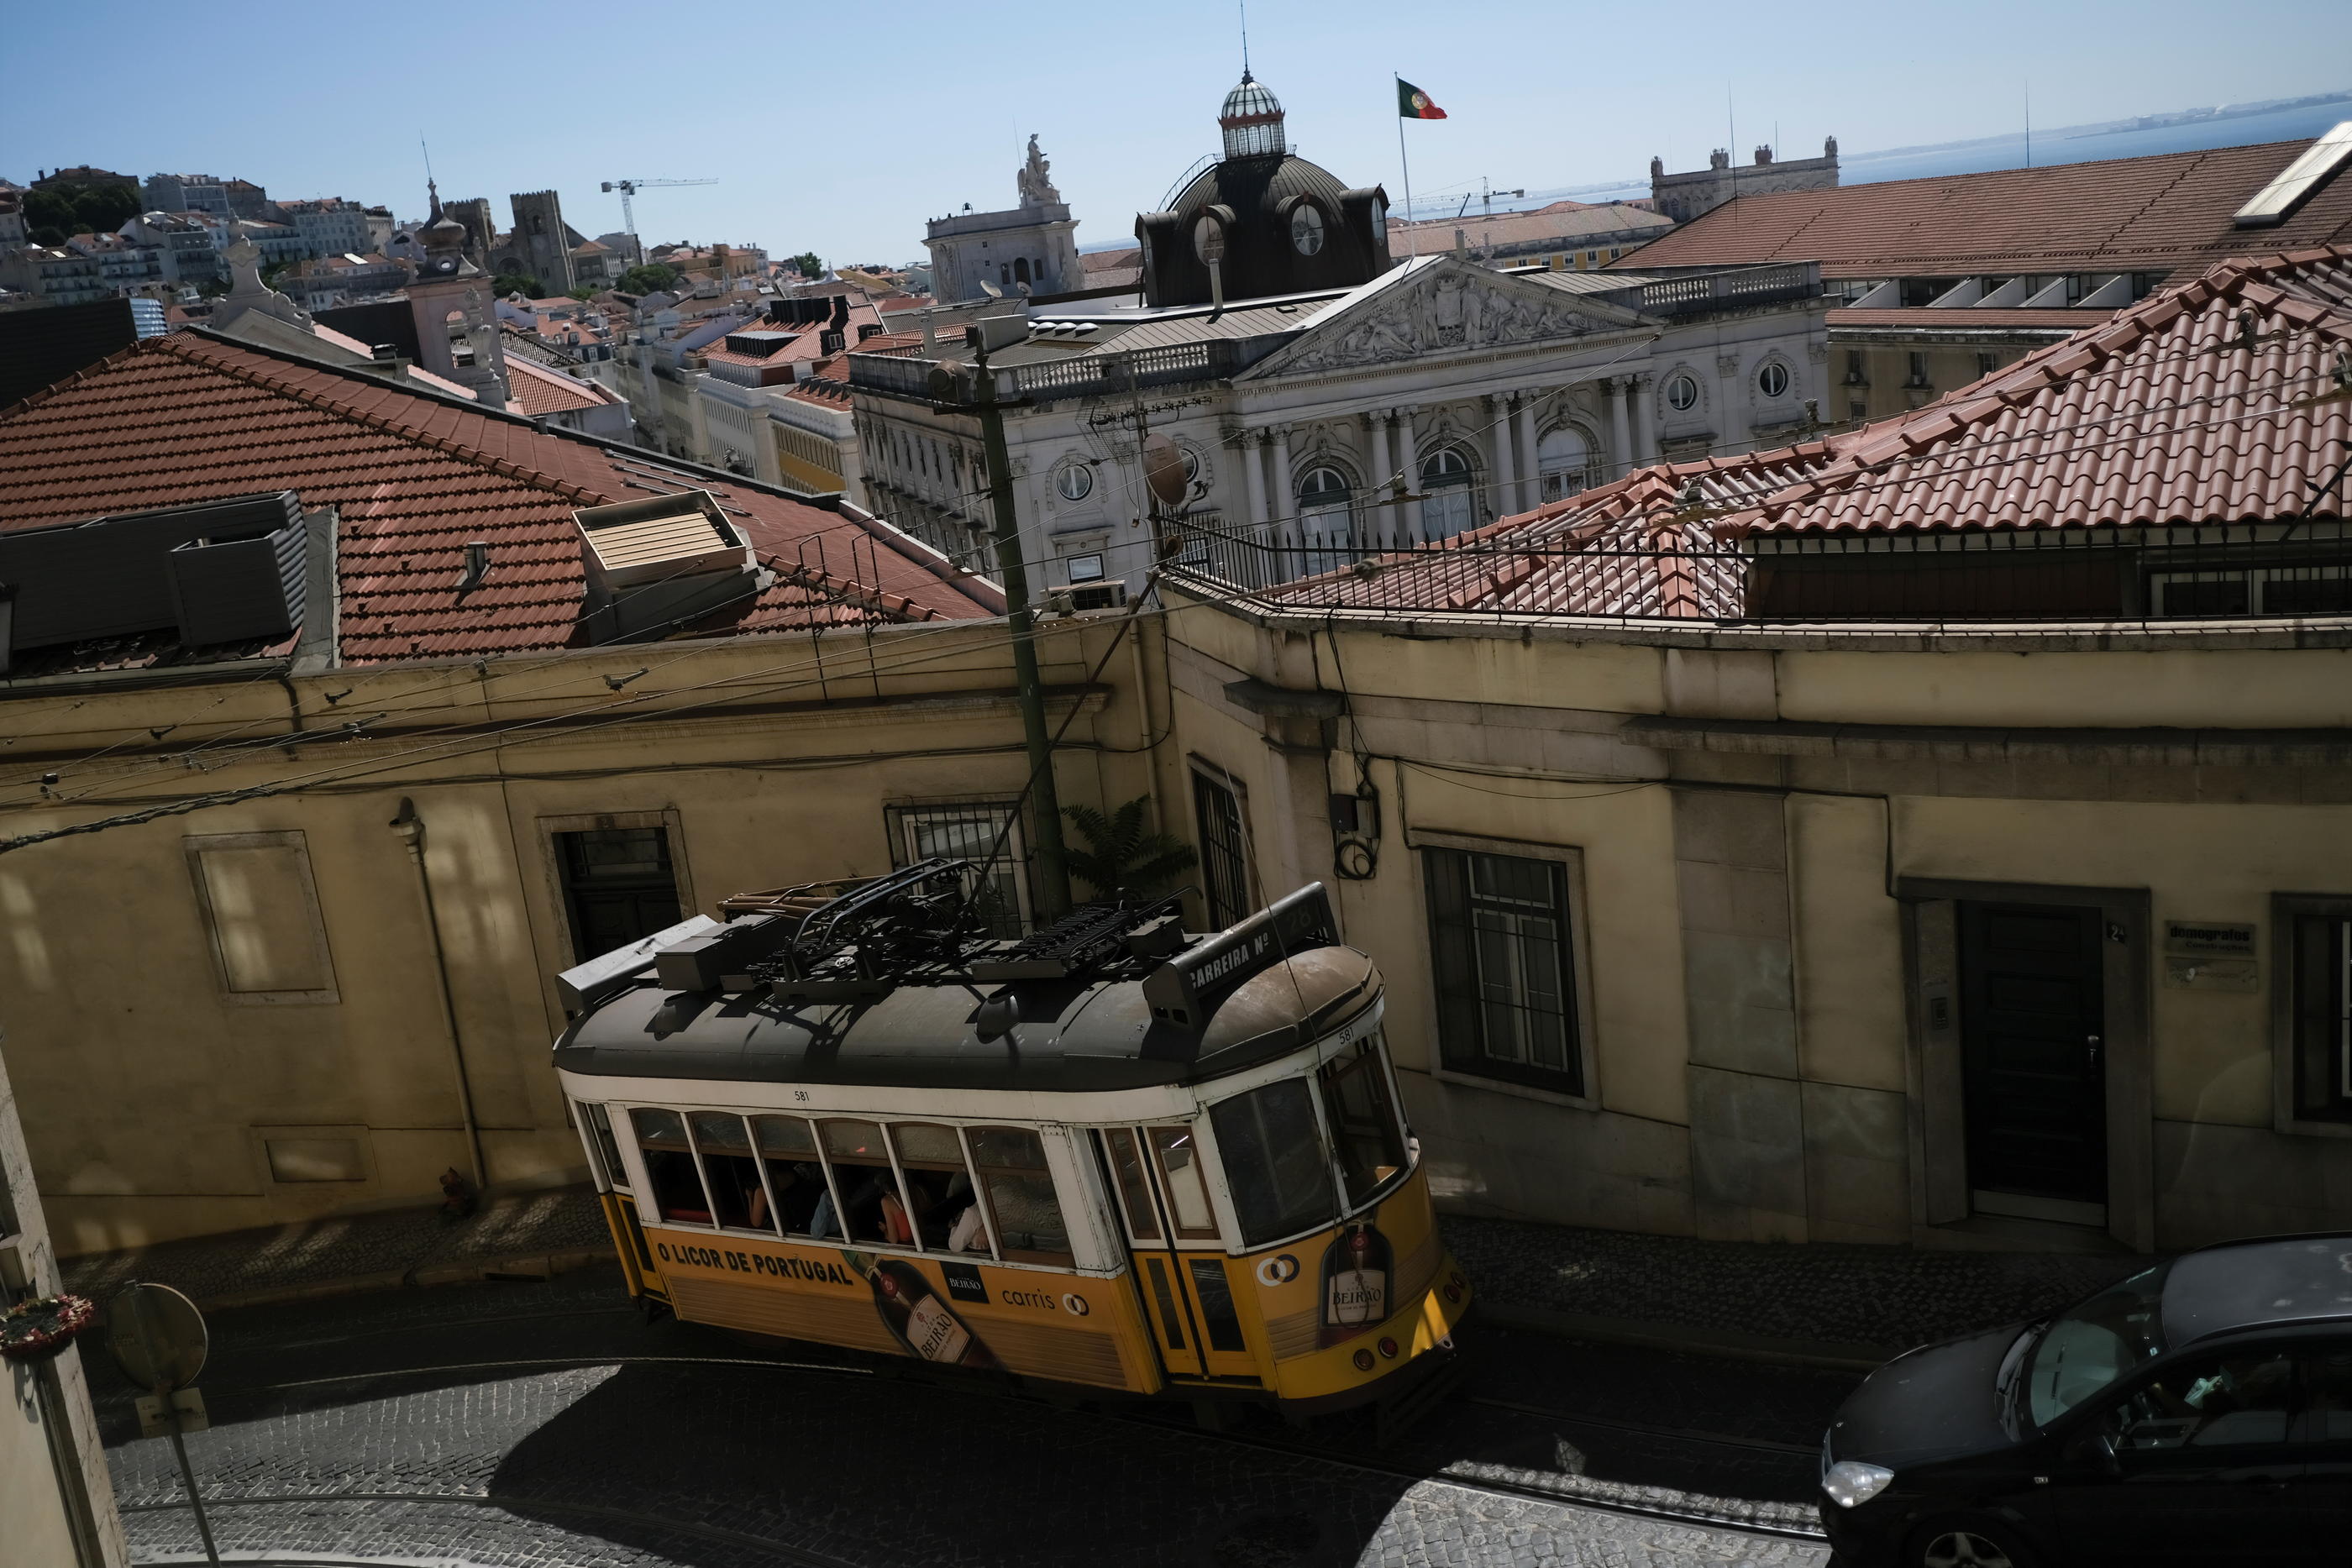 A Lisbonne, cafés, restaurants et commerces verront à nouveau réduits leurs horaires et leur capacité d'accueil. (Illustration). REUTERS/Pedro Nunes